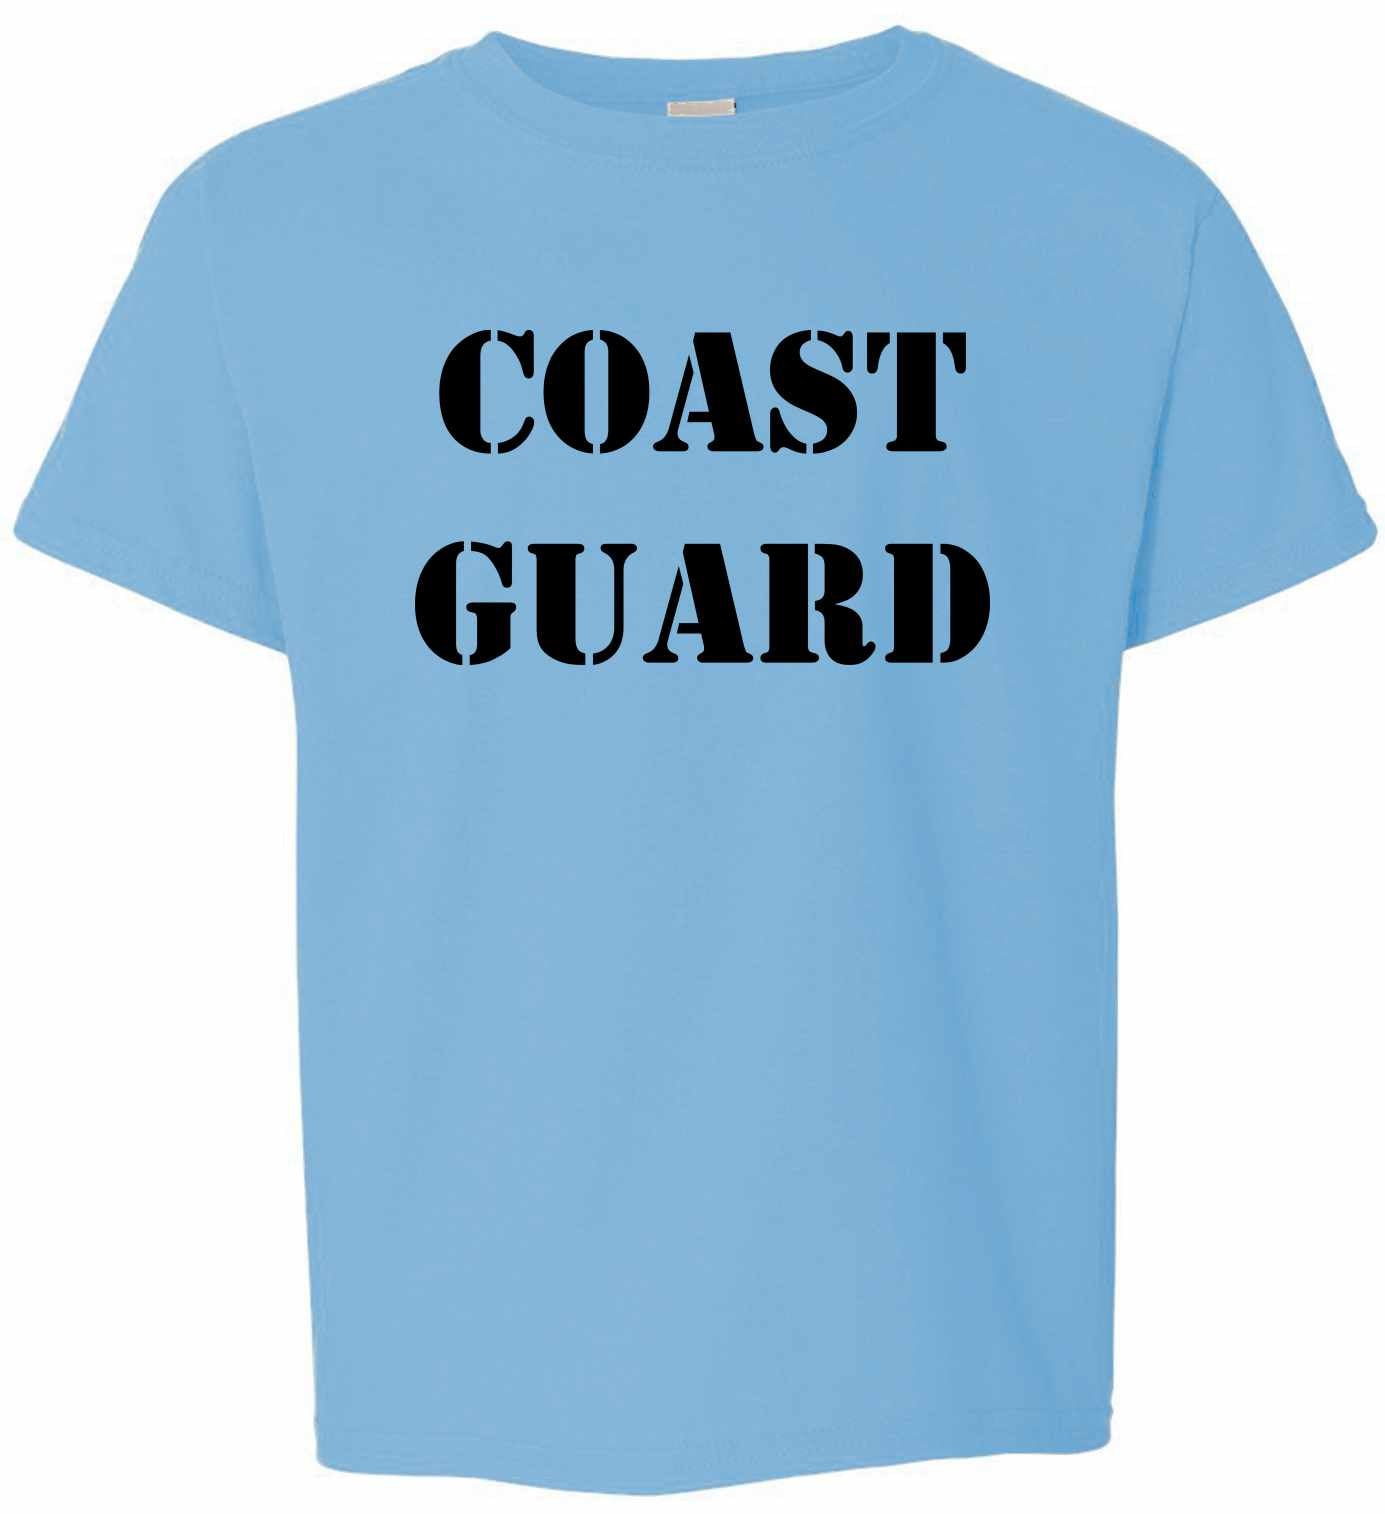 COAST GUARD on Kids T-Shirt (#340-201)